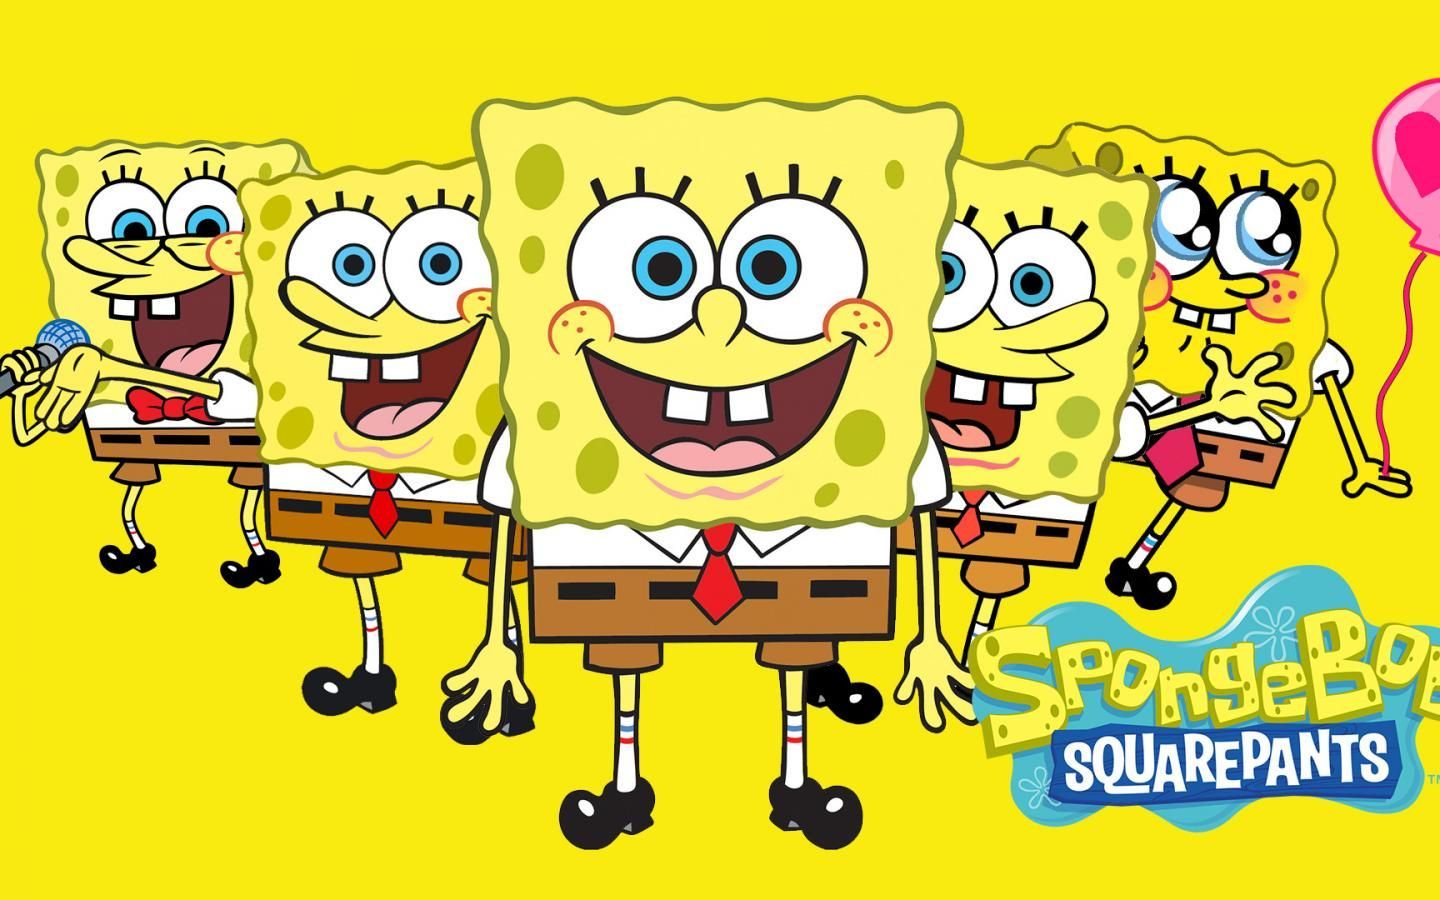 Spongebob Squarepants Desktop Wallpaper. Spongebob wallpaper, Cartoon wallpaper, Spongebob